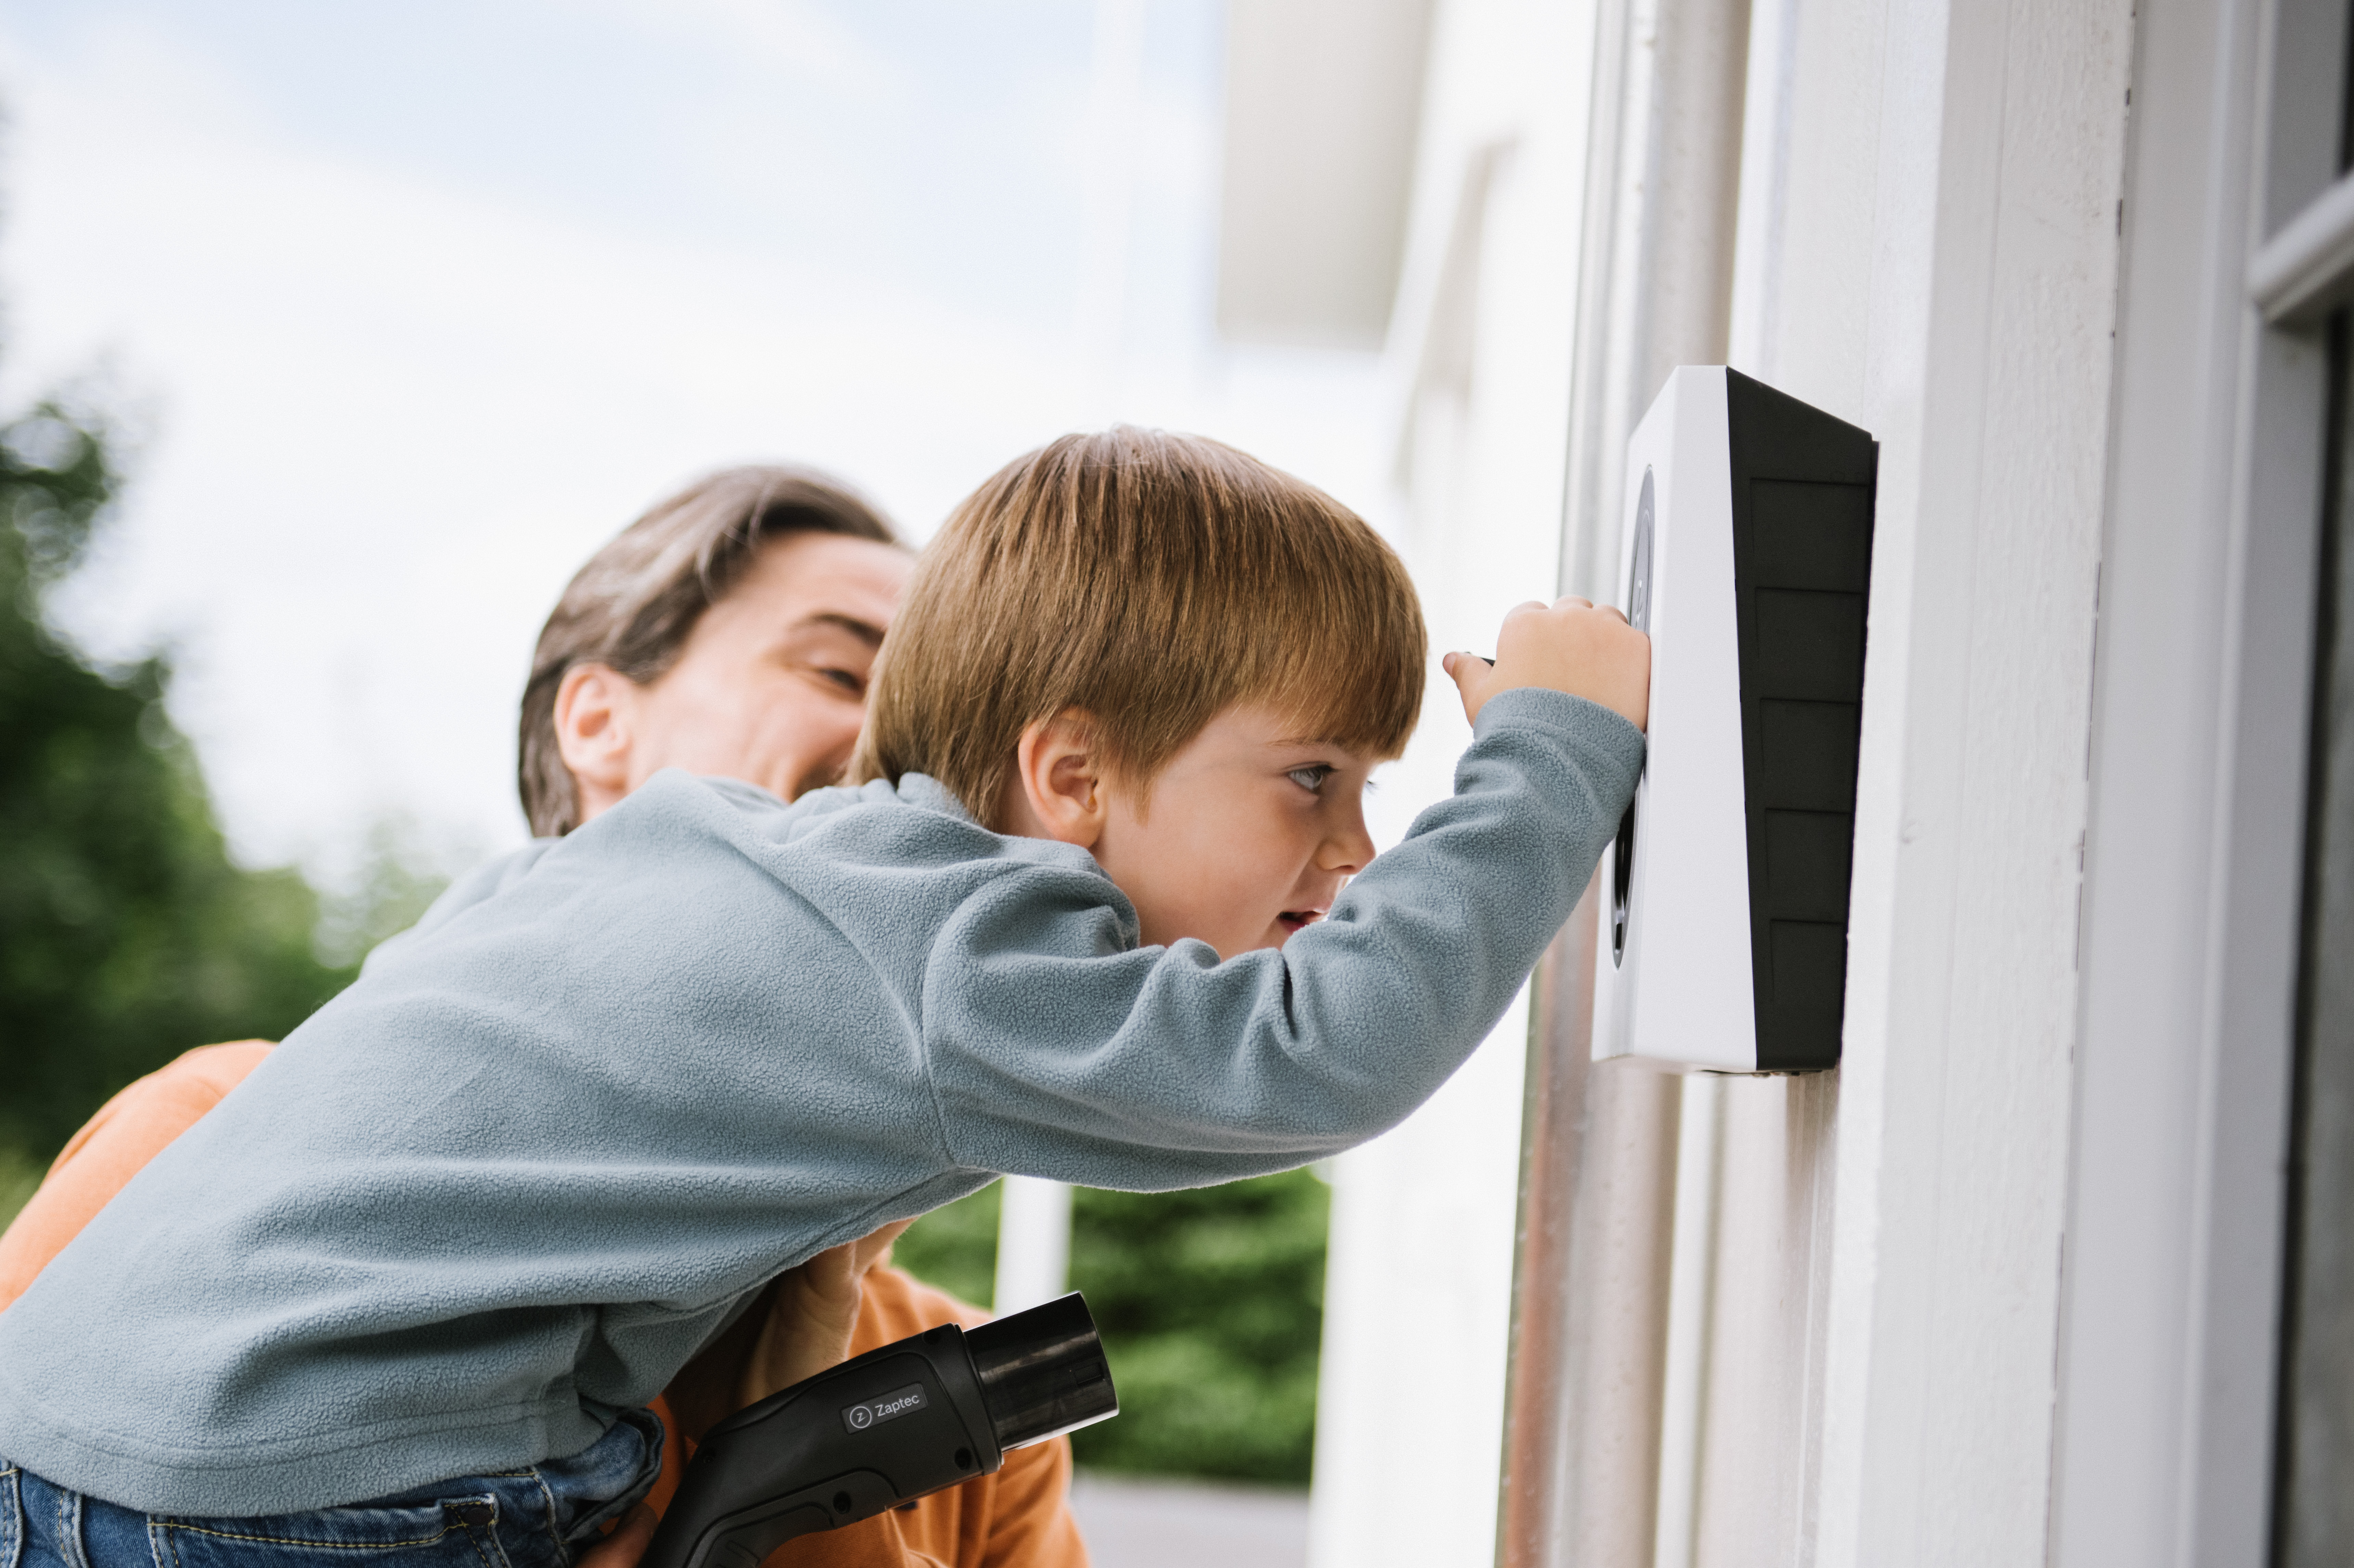 Far med barn, der undersøger en zaptec go ladeboks på væggen af deres hus - nyhed om prøvekunder til zaptec ladeboks